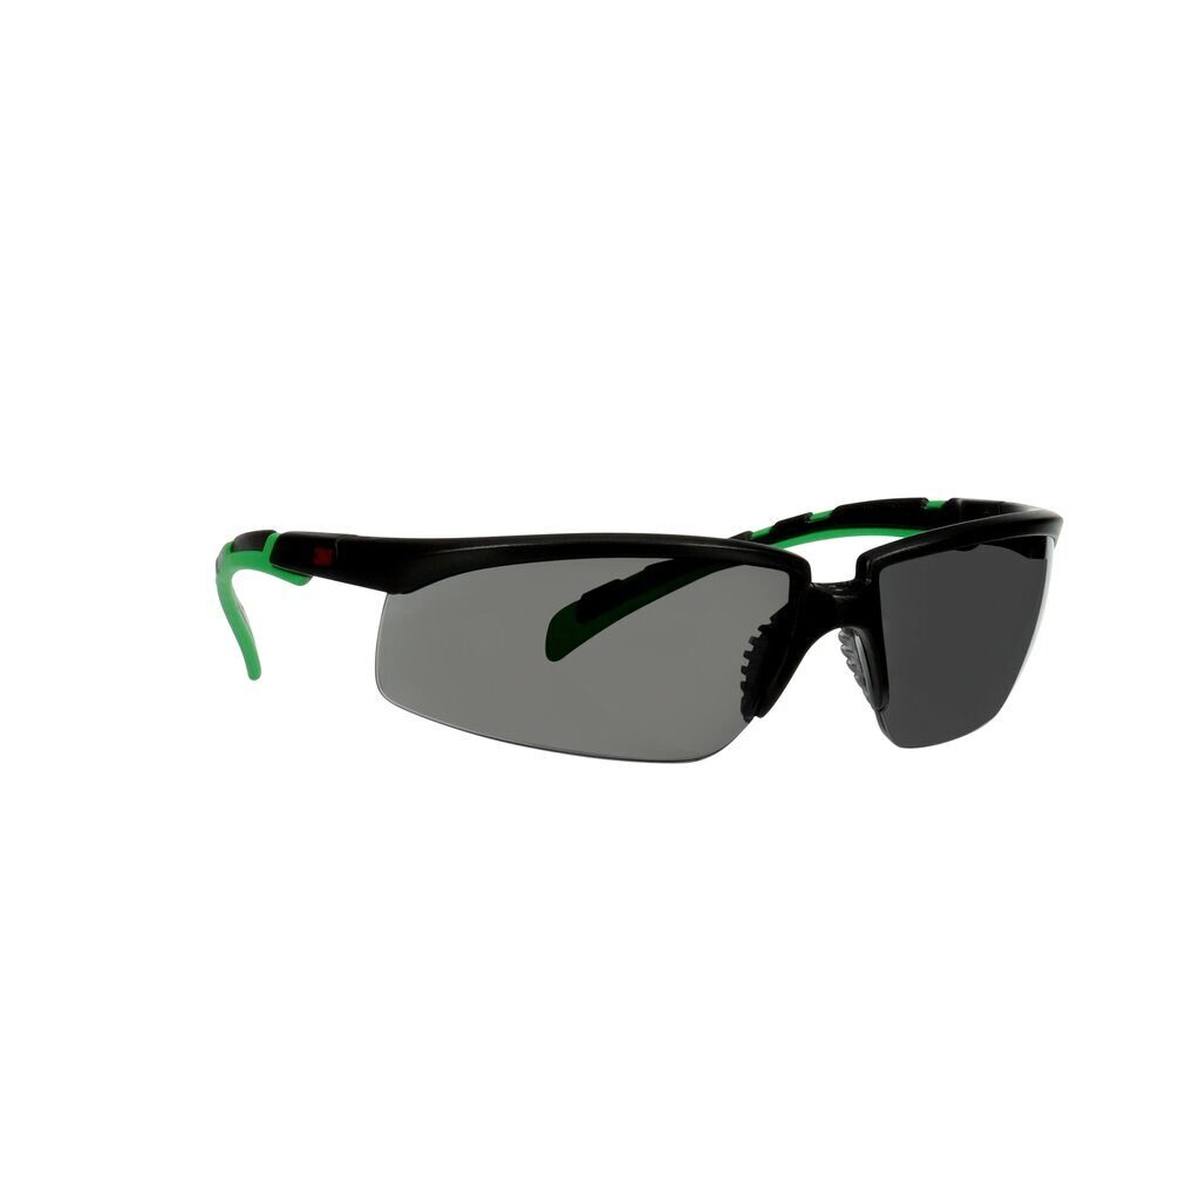 3M Solus 2000 lunettes de protection, monture noire/verte, traitement anti-rayures + (K), écran gris IR 3,0, S2030ASP-BLK